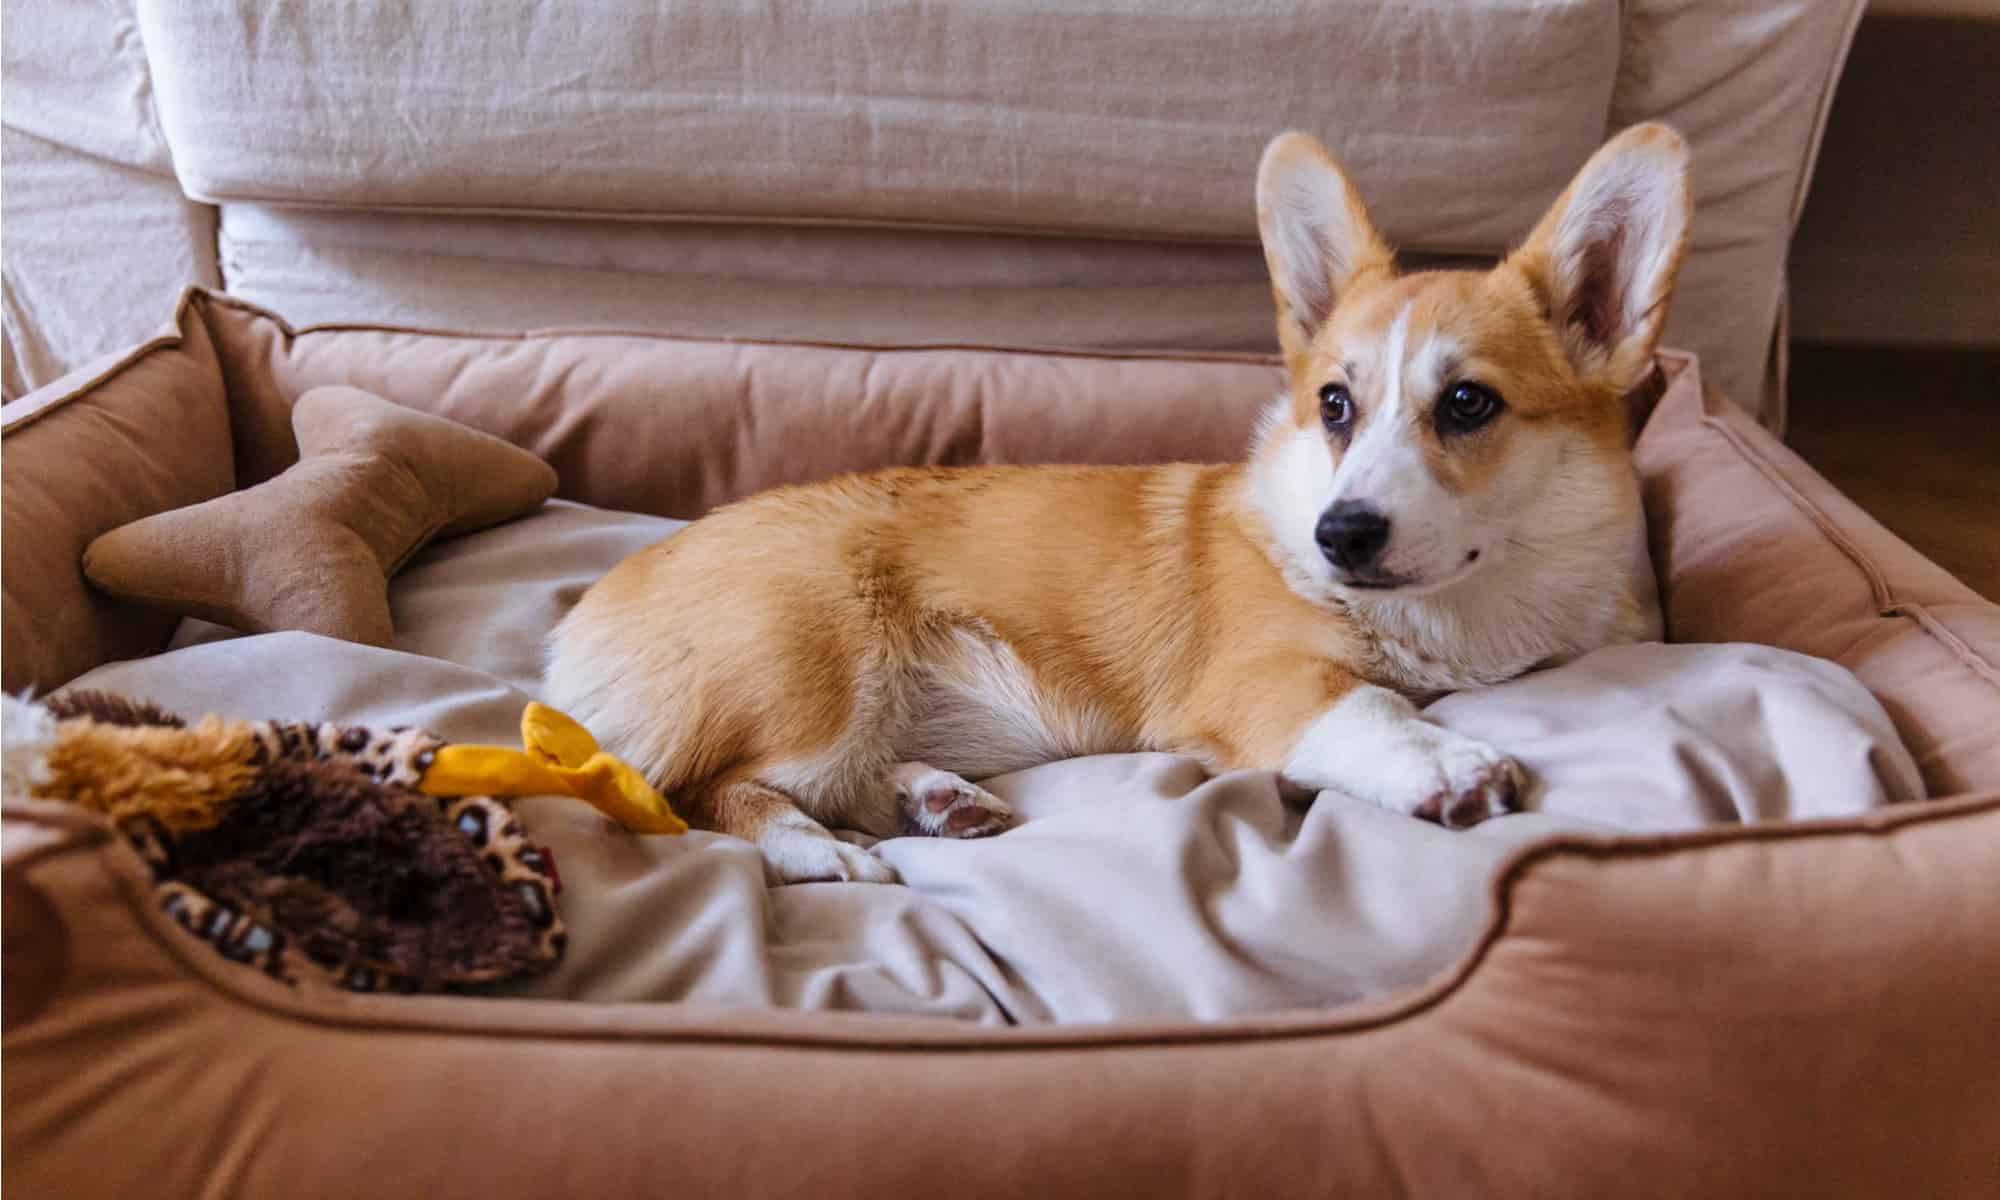 A dog enjoys its petfusion dog bed.